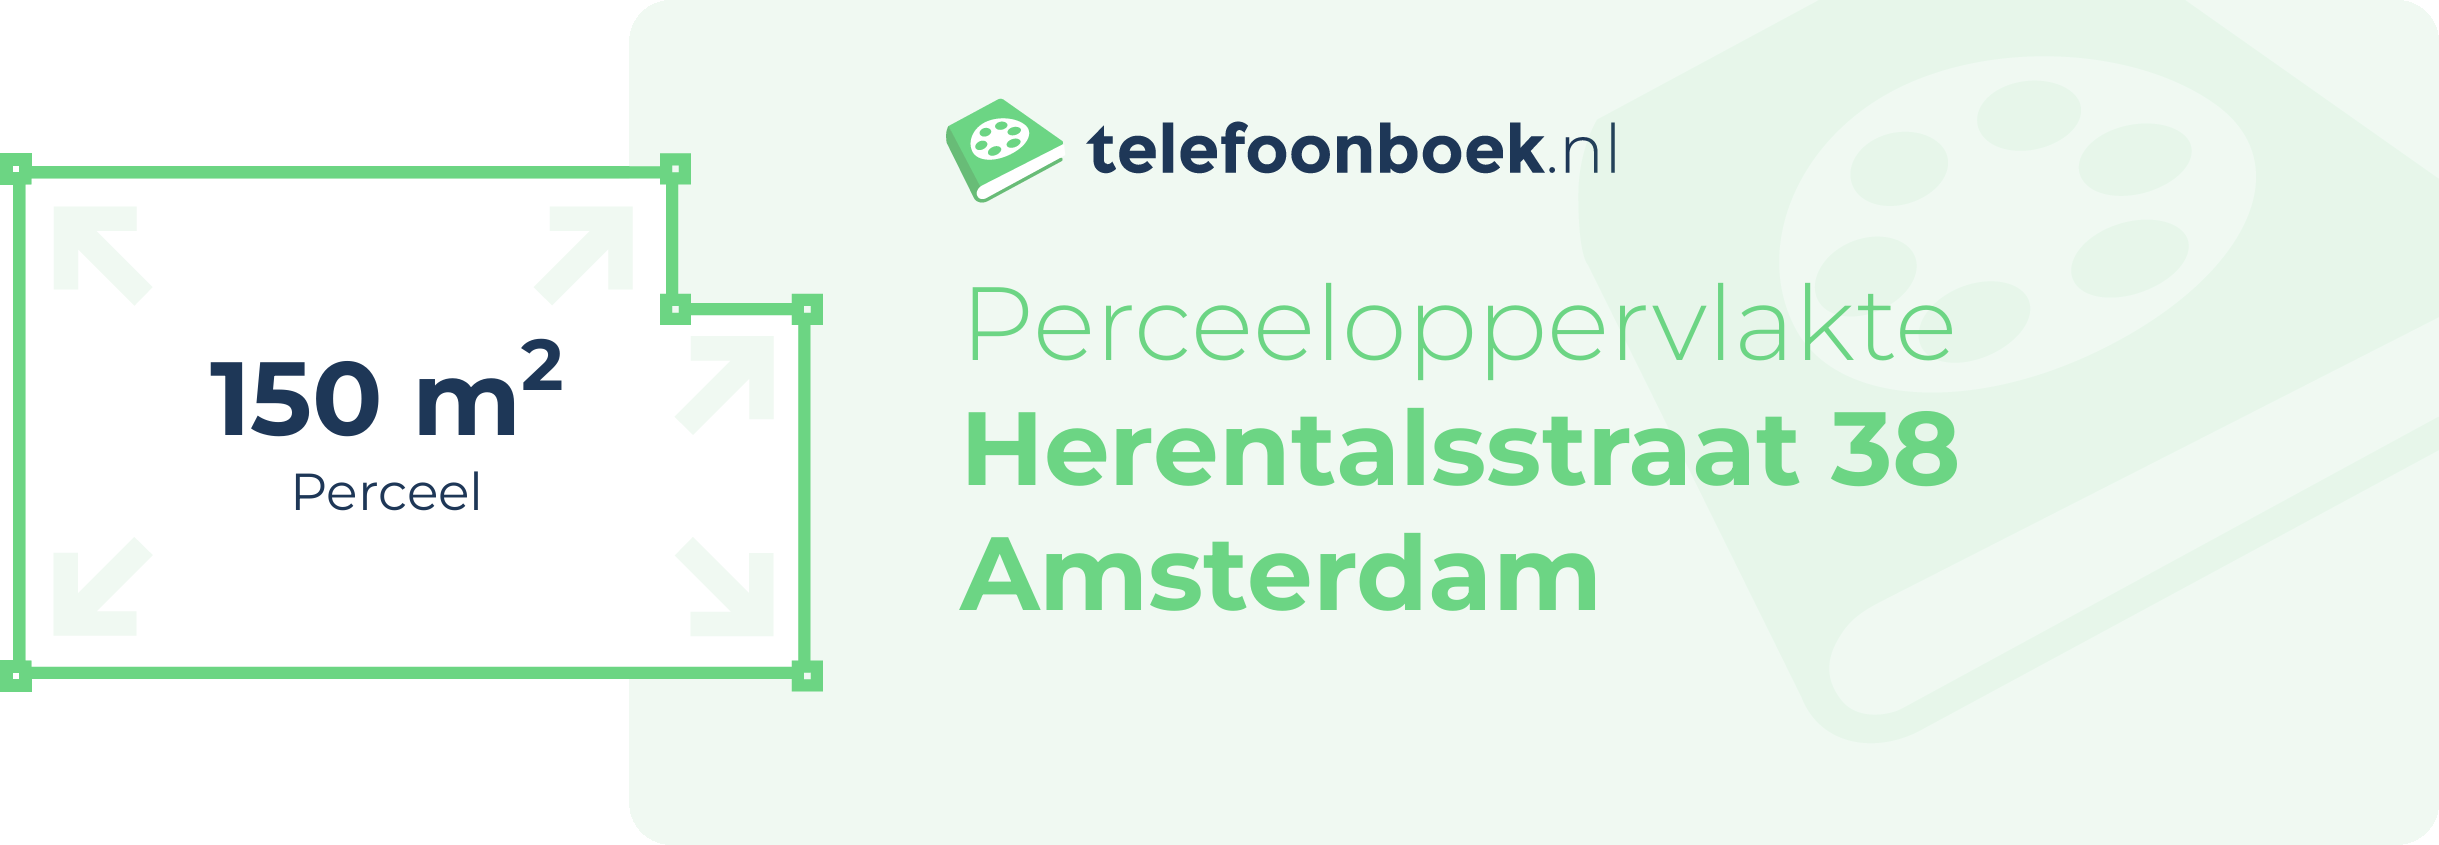 Perceeloppervlakte Herentalsstraat 38 Amsterdam